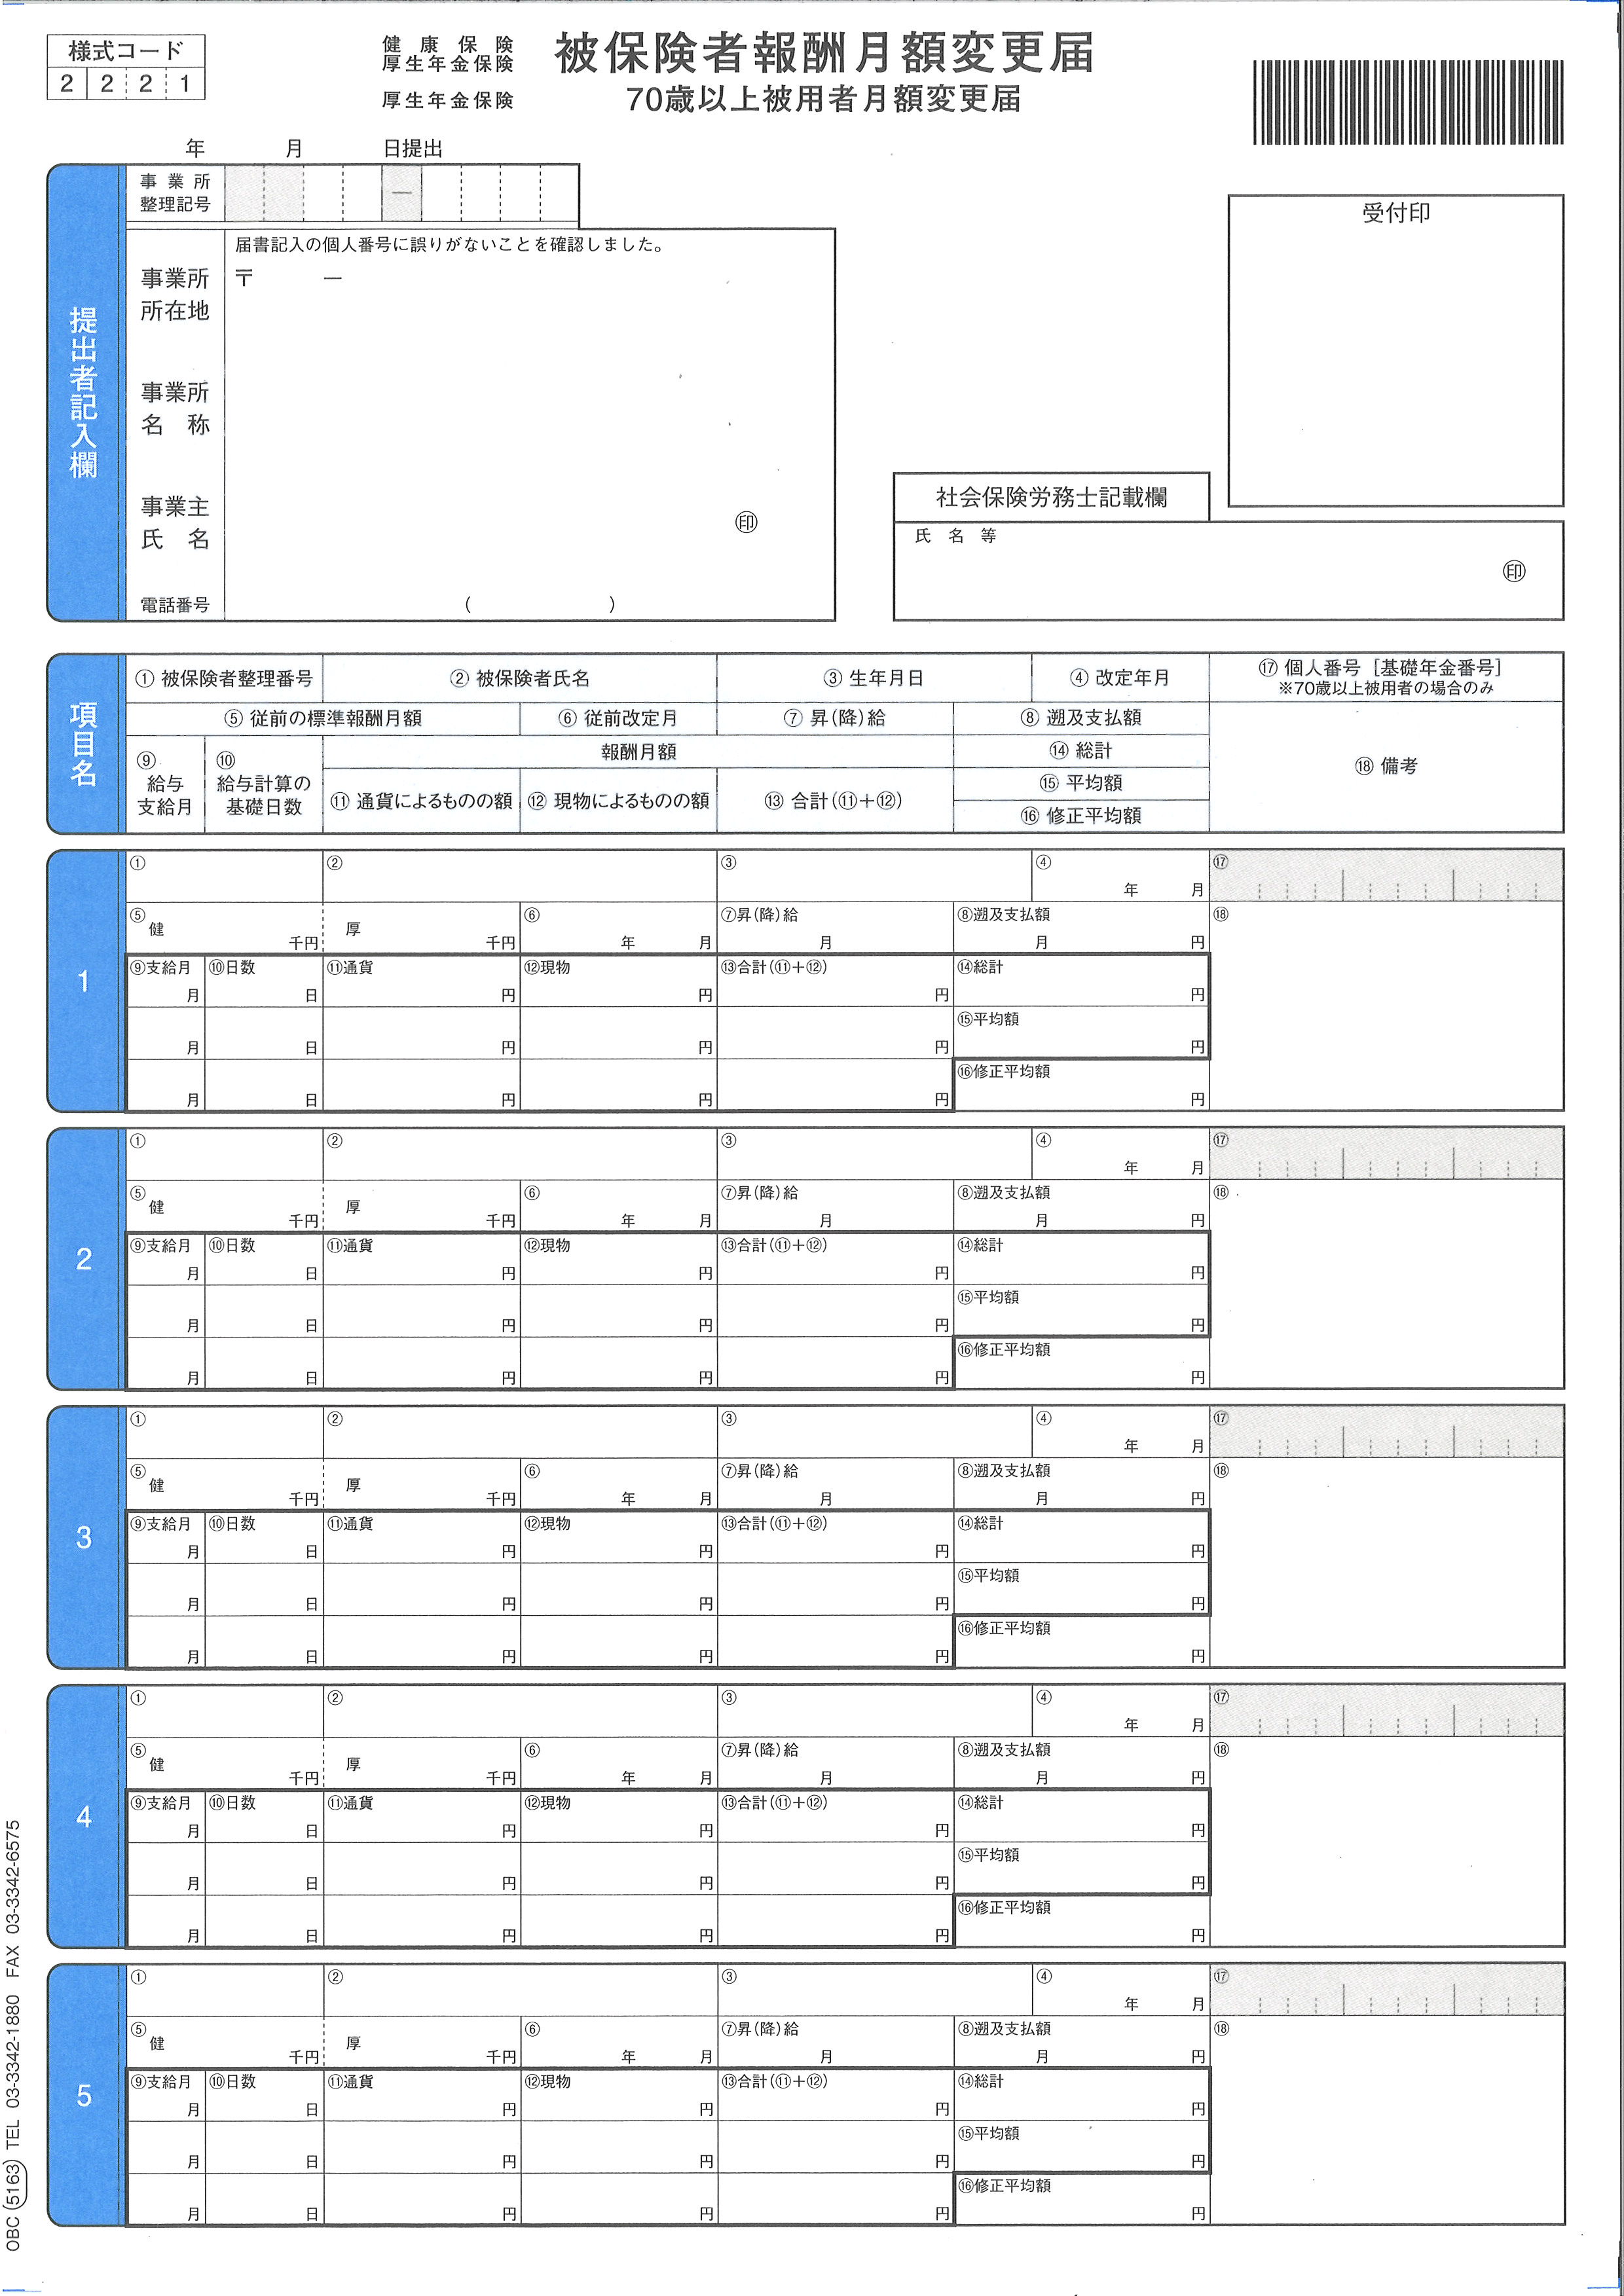 (業務用2セット) オービックビジネスコンサルタント 奉行シリーズ用専用 単票給与明細書 6101 - 3